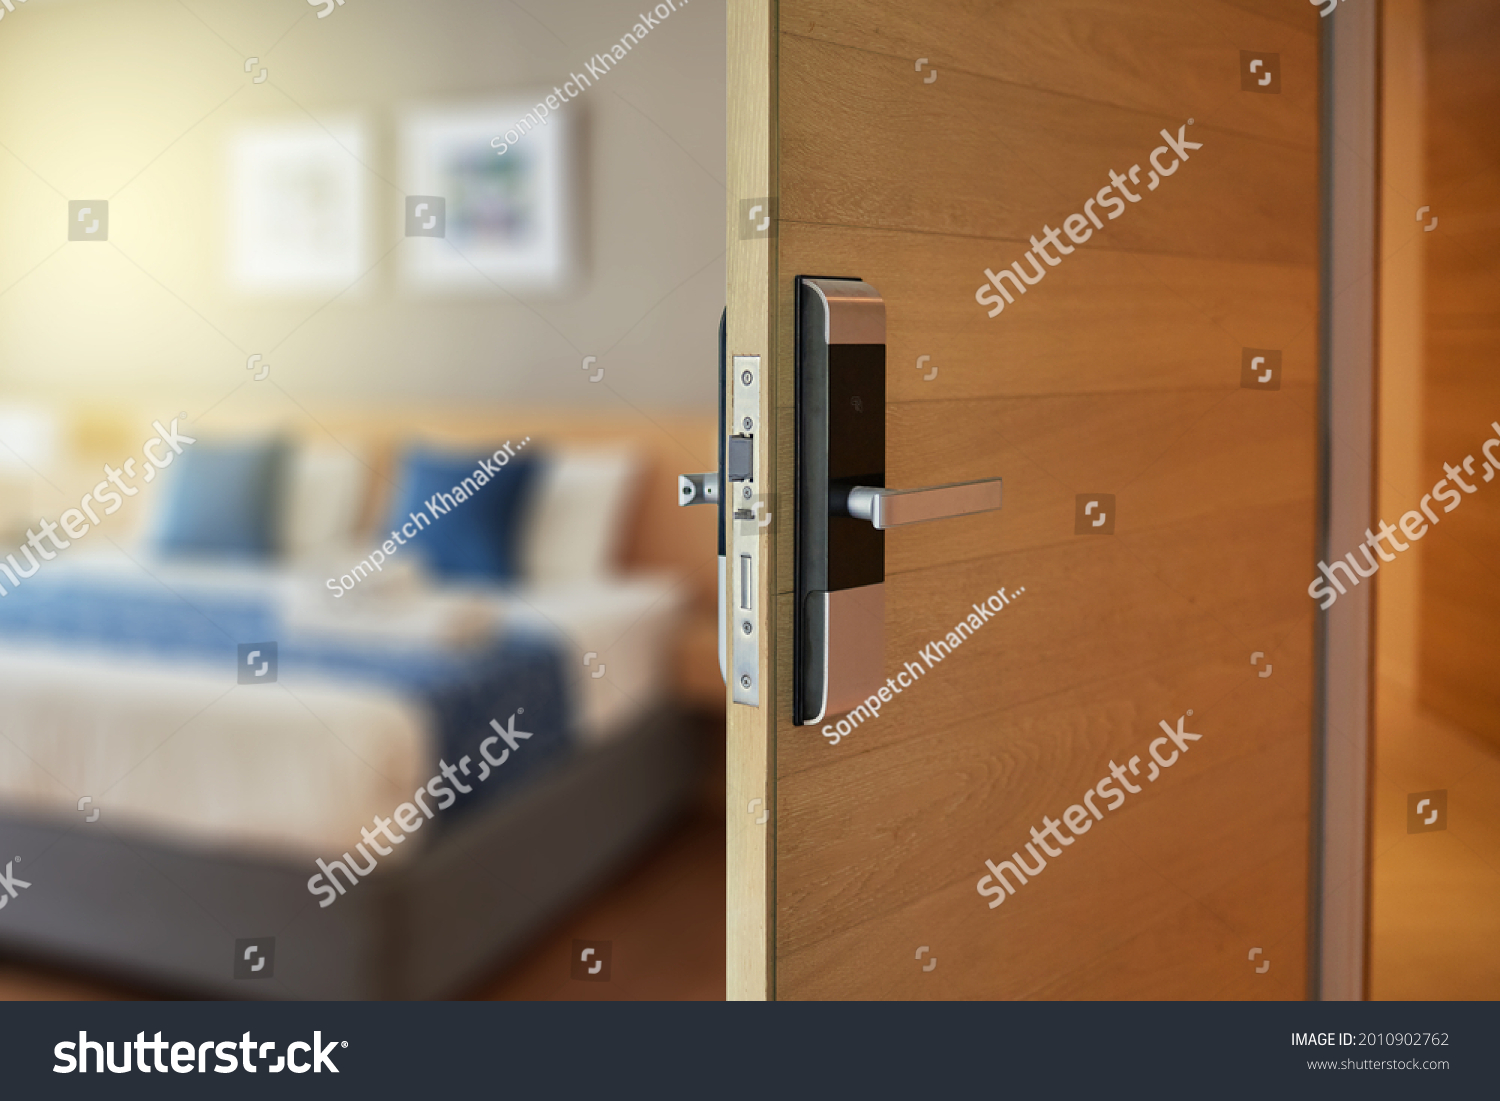 Digital door lock for house, hotel or apartment door. Electronic door handle for smart life style. Digital Door handle or Electronics knob  for access to room security system. #2010902762